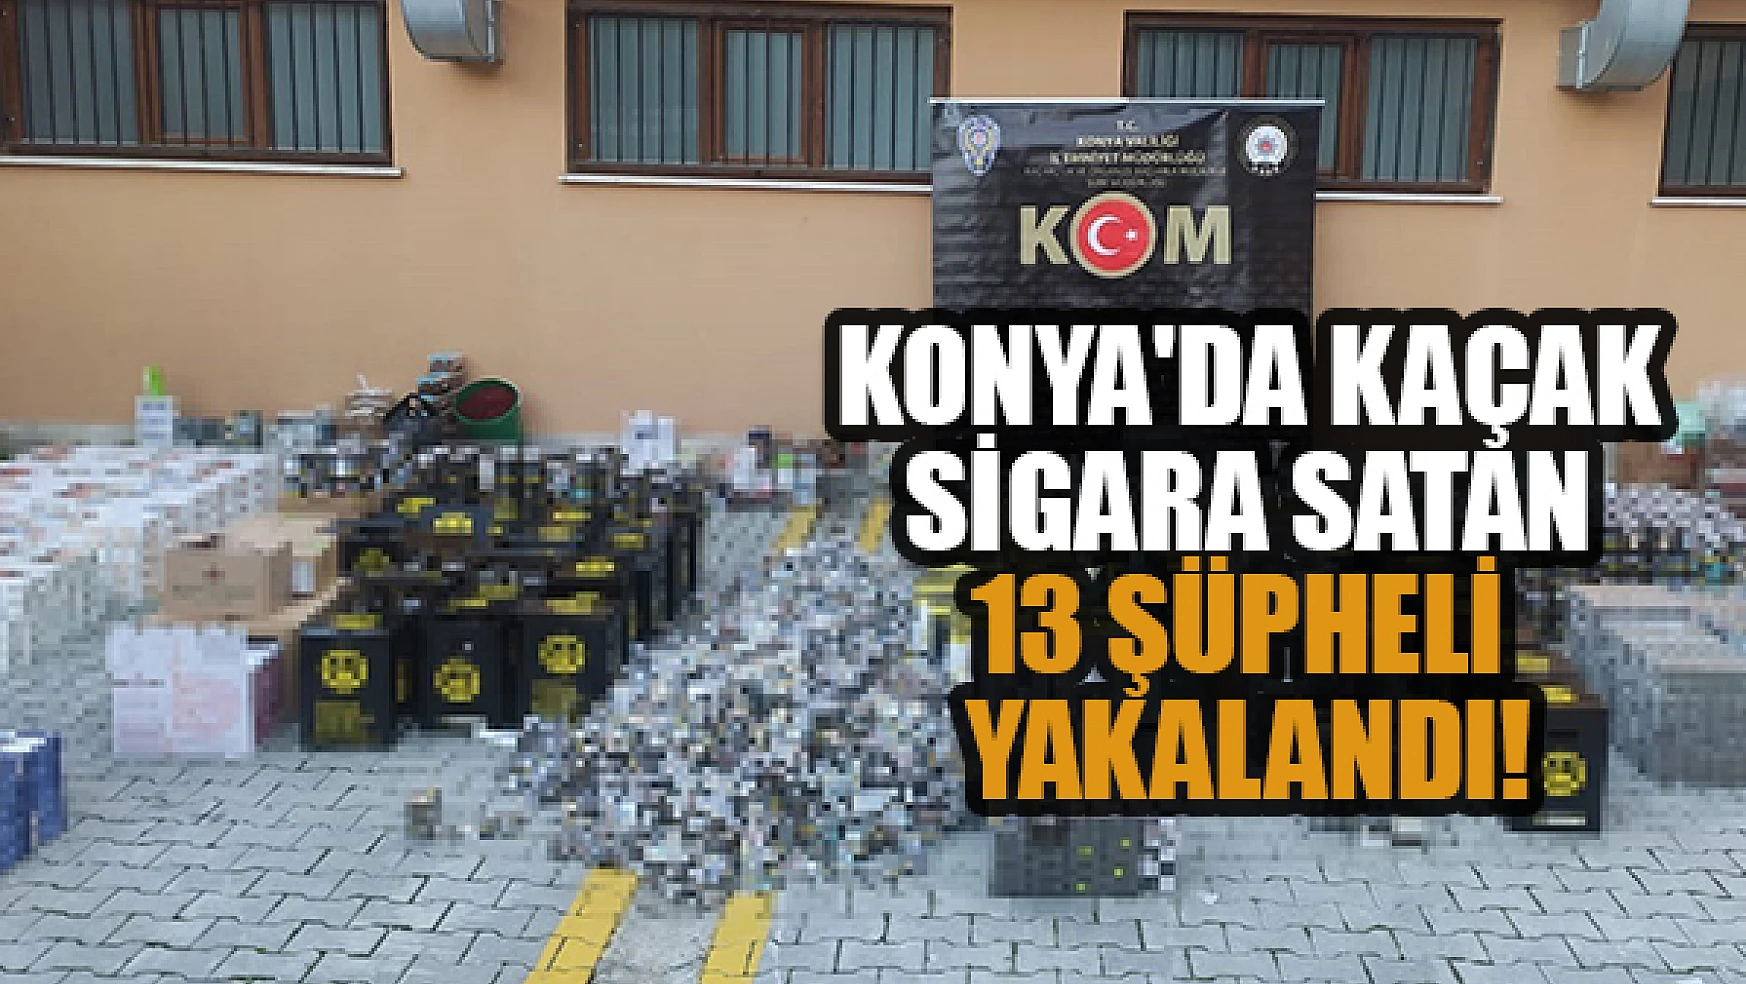 Konya'da okul çevrelerinde kaçak sigara satan 13 şüpheli yakalandı